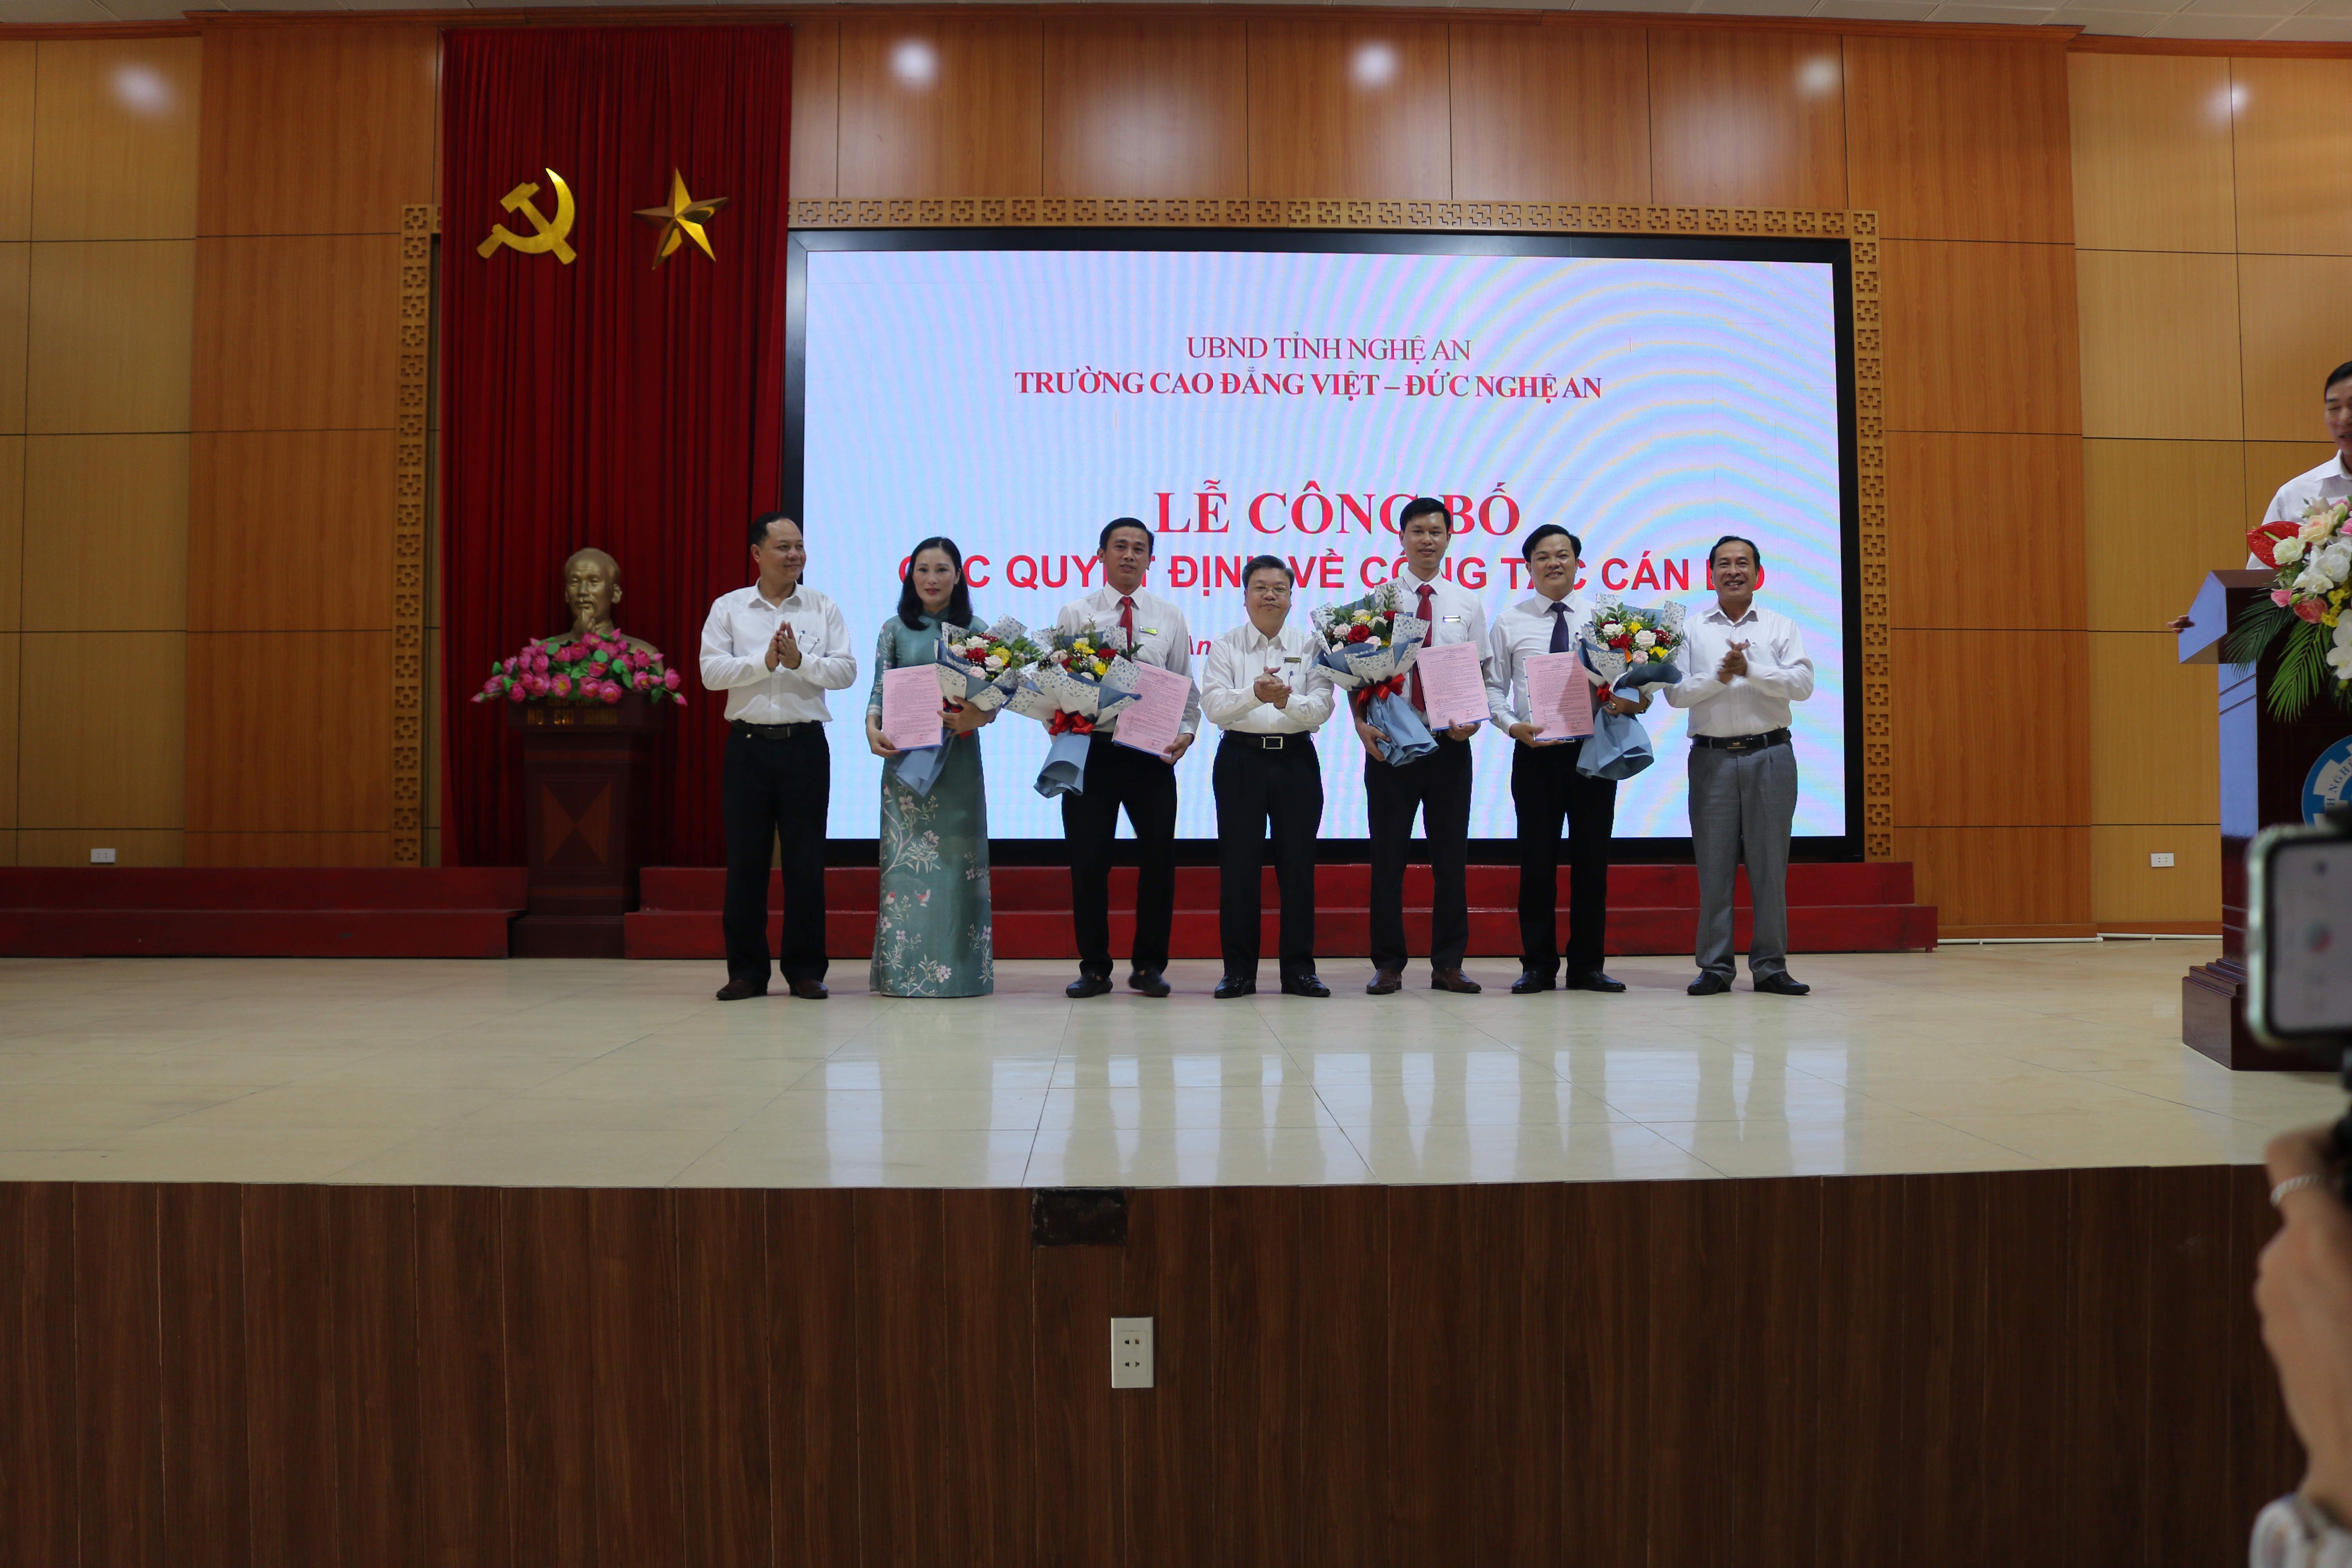  Trường Cao đẳng Việt – Đức Nghệ An tổ chức Lễ công bố các quyết định về công tác cán bộ